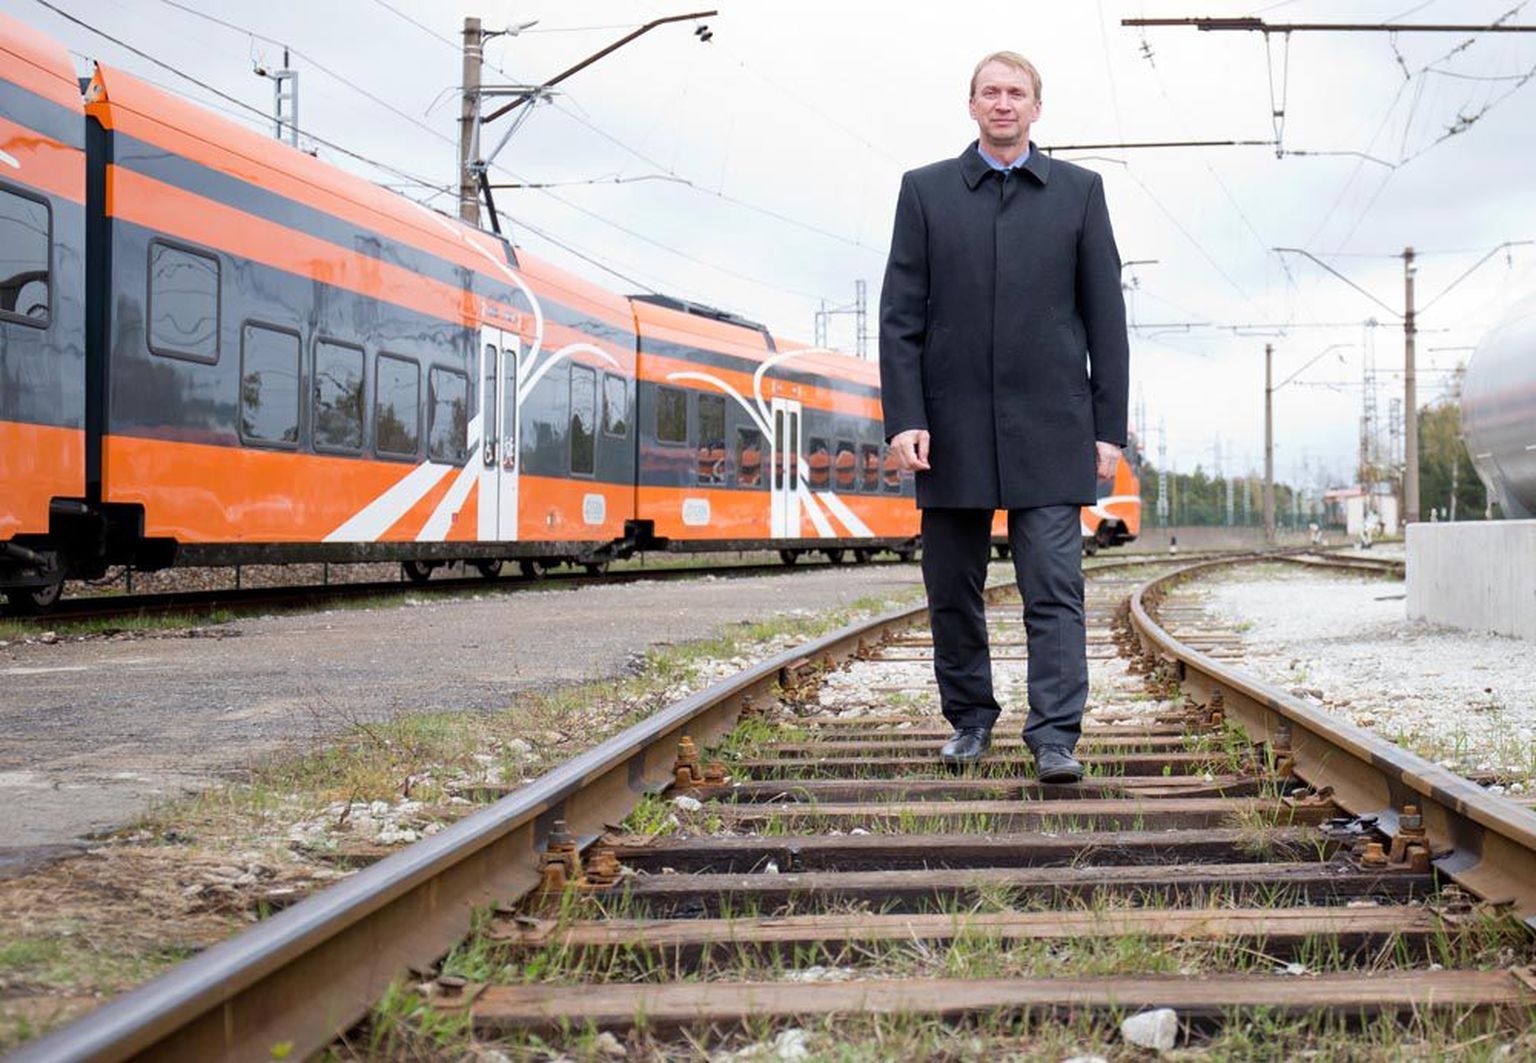 Elroni juhatuse esimehe Andrus Ossipi sõnul oleks hädasti vaja remontida Tapa-Tartu ja Tapa-Narva vahelist raudteelõiku, küsimus aga on selles, kust raha leida.